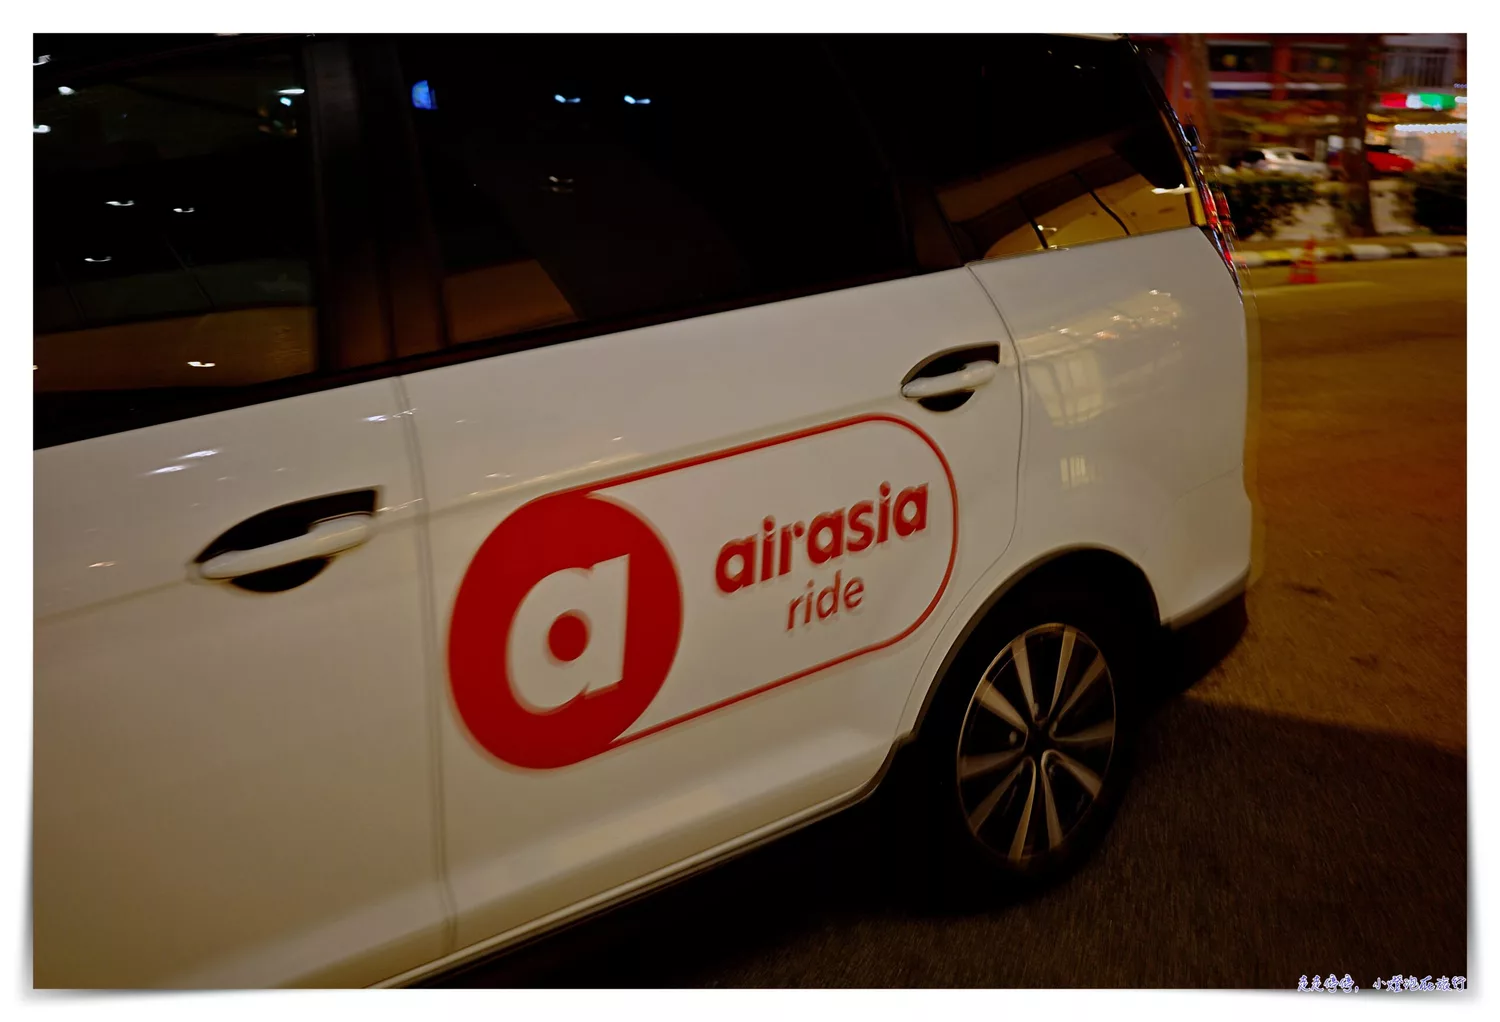 延伸閱讀：馬來西亞叫車系統|Grab、airasia